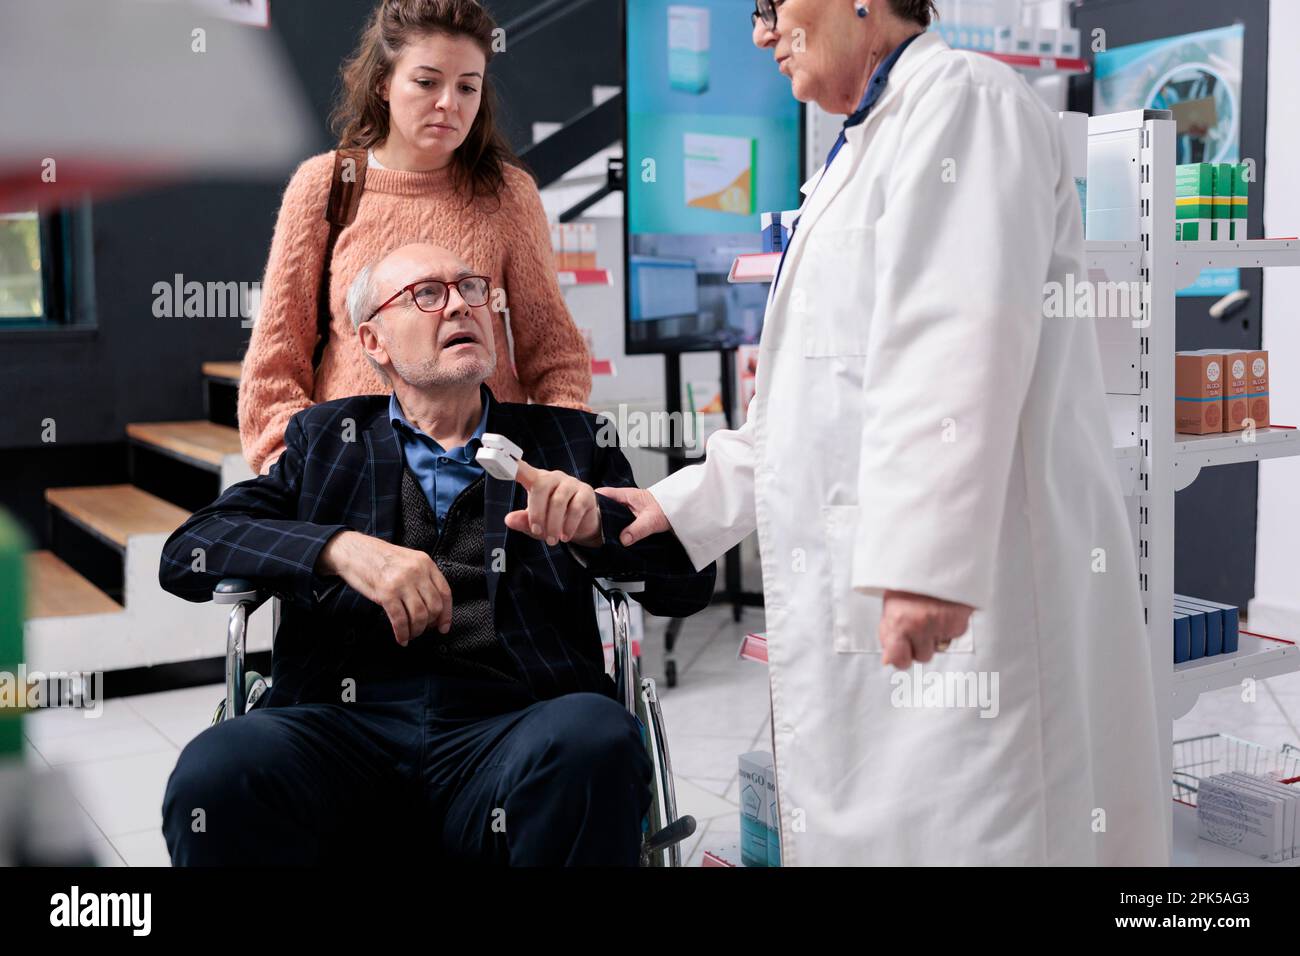 Utilisateur en fauteuil roulant parlant avec un employé de pharmacie de la  prescription tandis que le pharmacien mesure la température à l'aide d'un  thermomètre en pharmacie. Employé aidant le client avec le